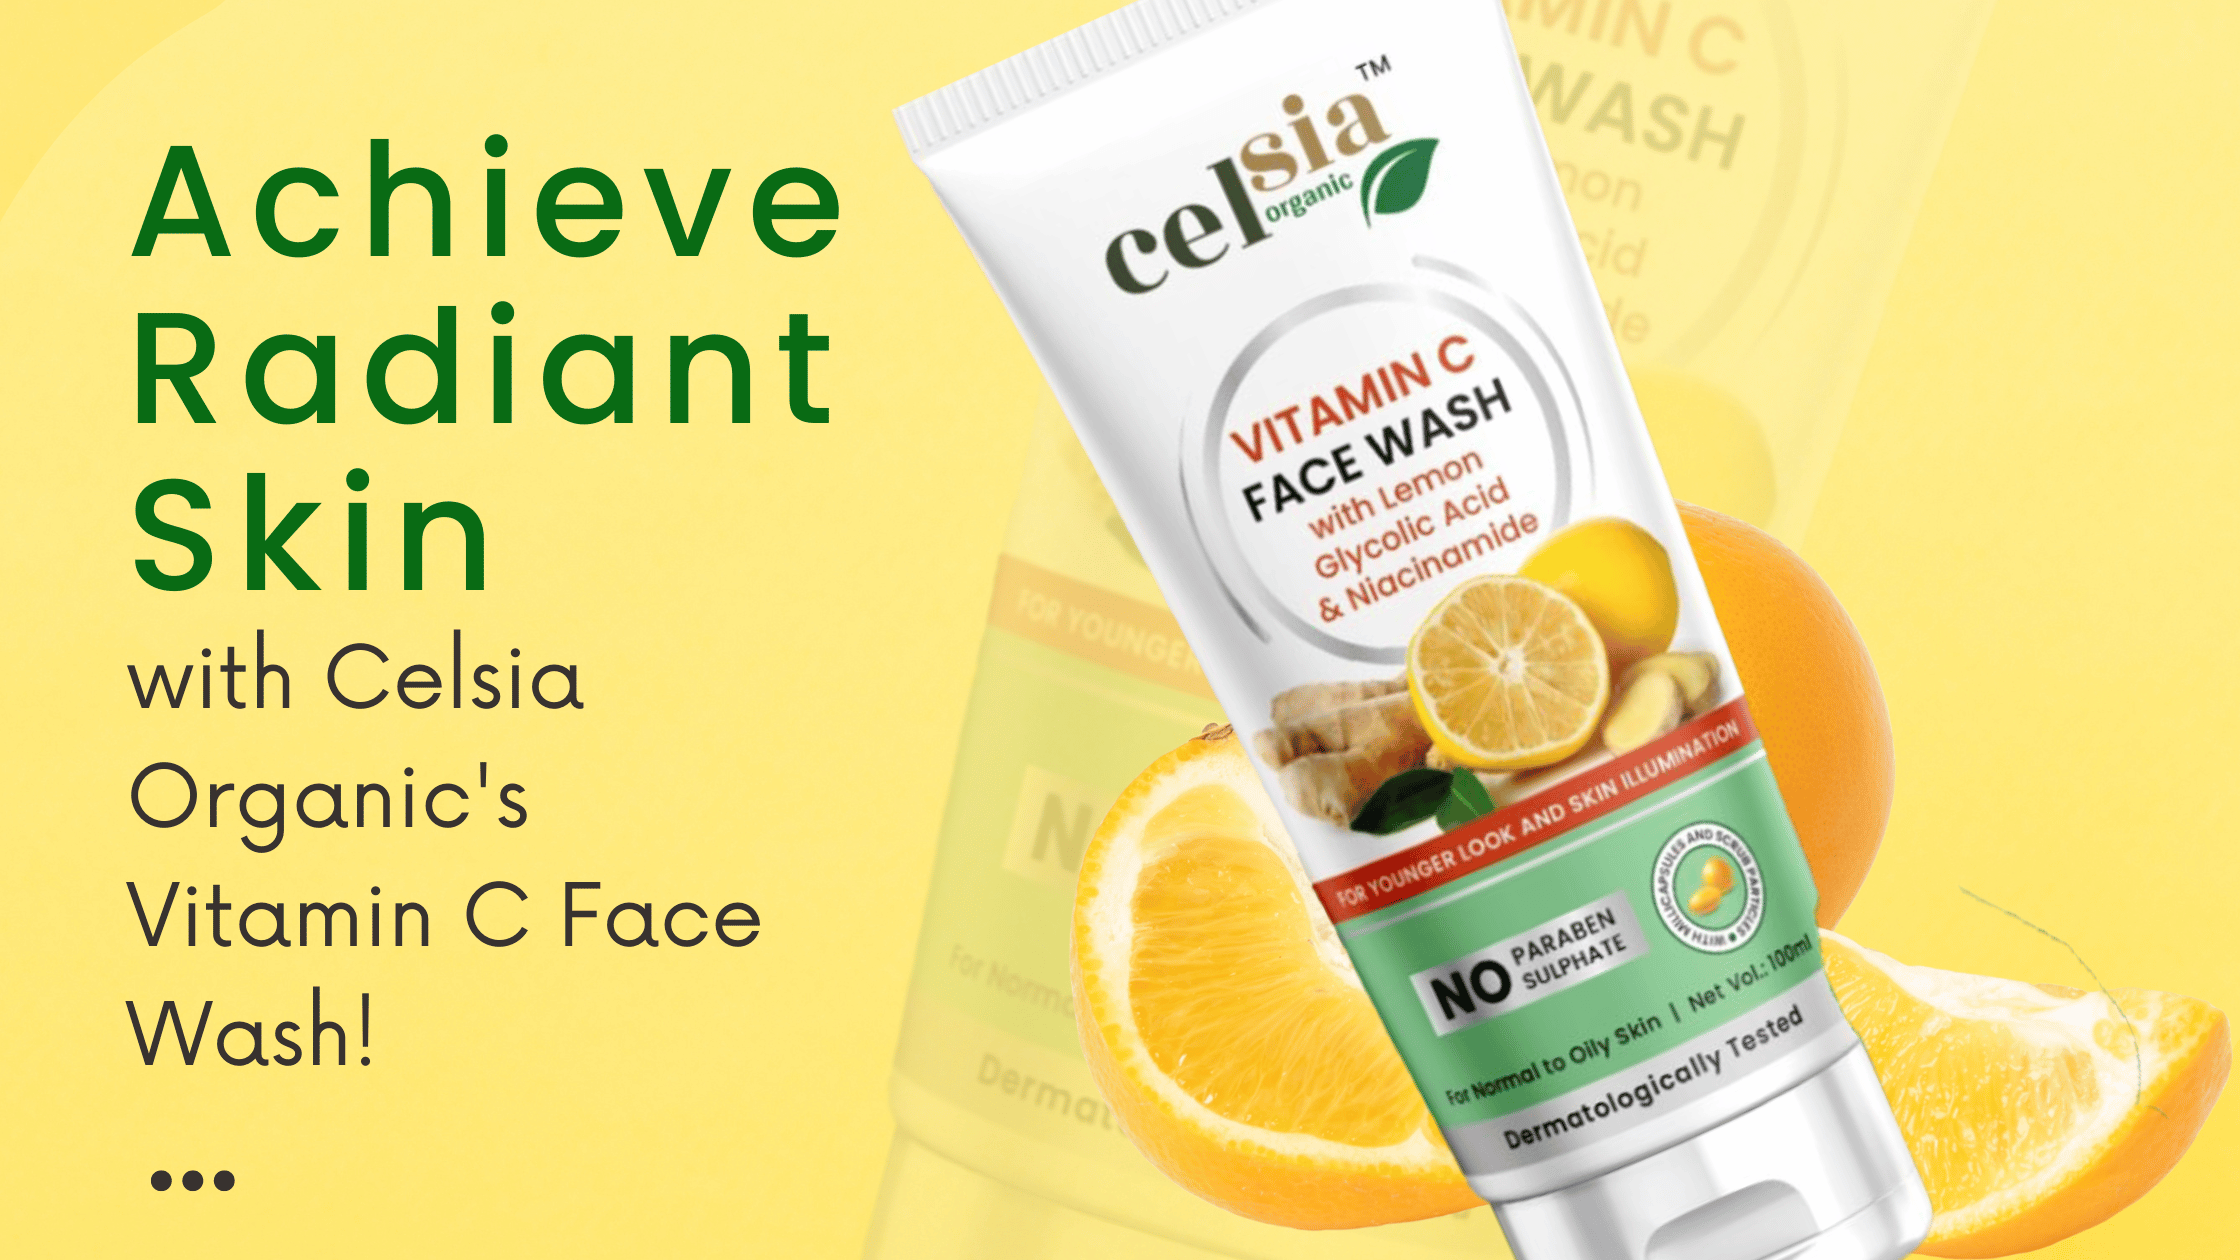 Celsia Organic's Vitamin C Face Wash!